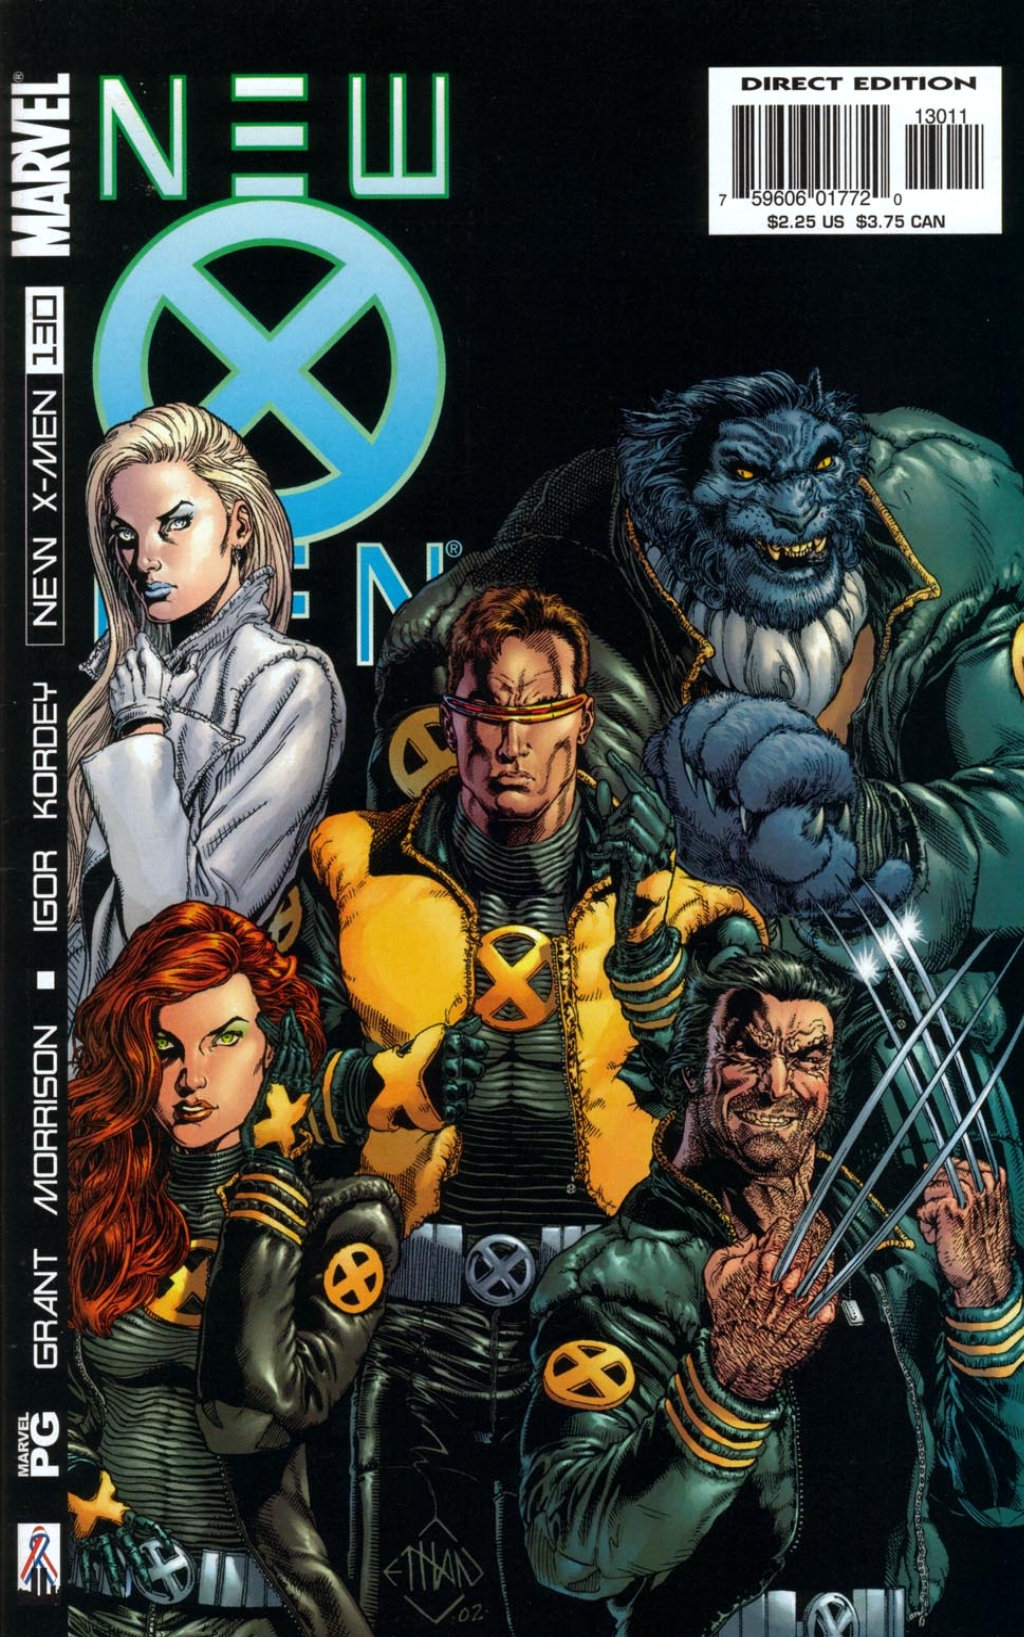 New X-Men Vol. 1 #130